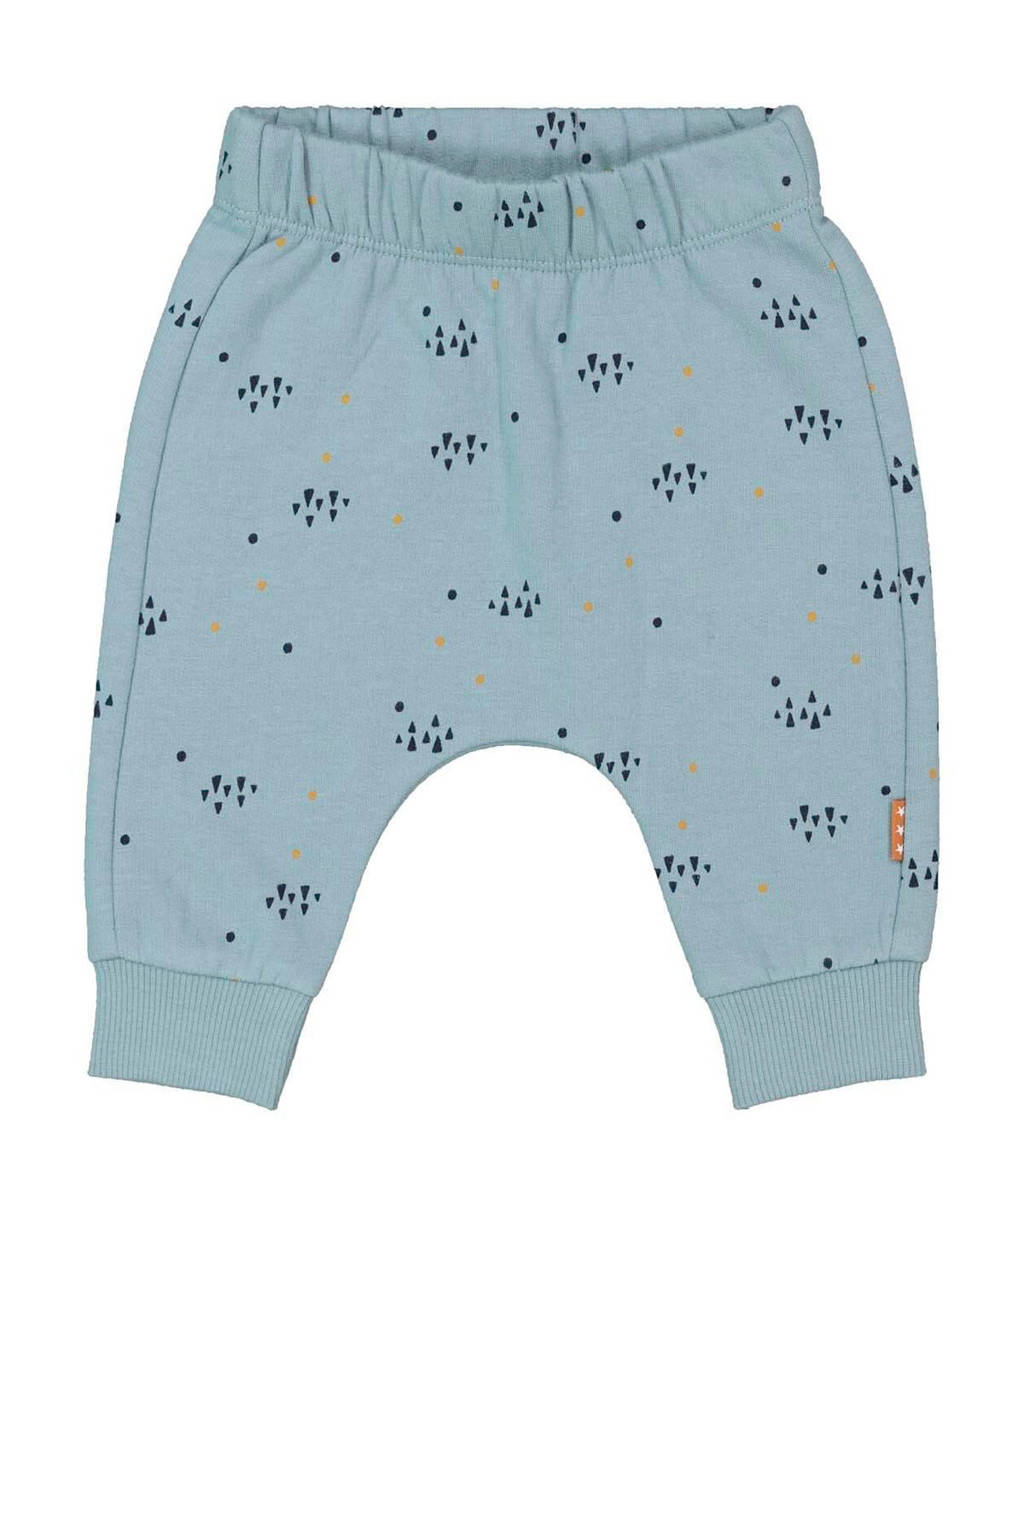 Gespierd hefboom schreeuw HEMA newborn baby broek met all over print blauw | wehkamp